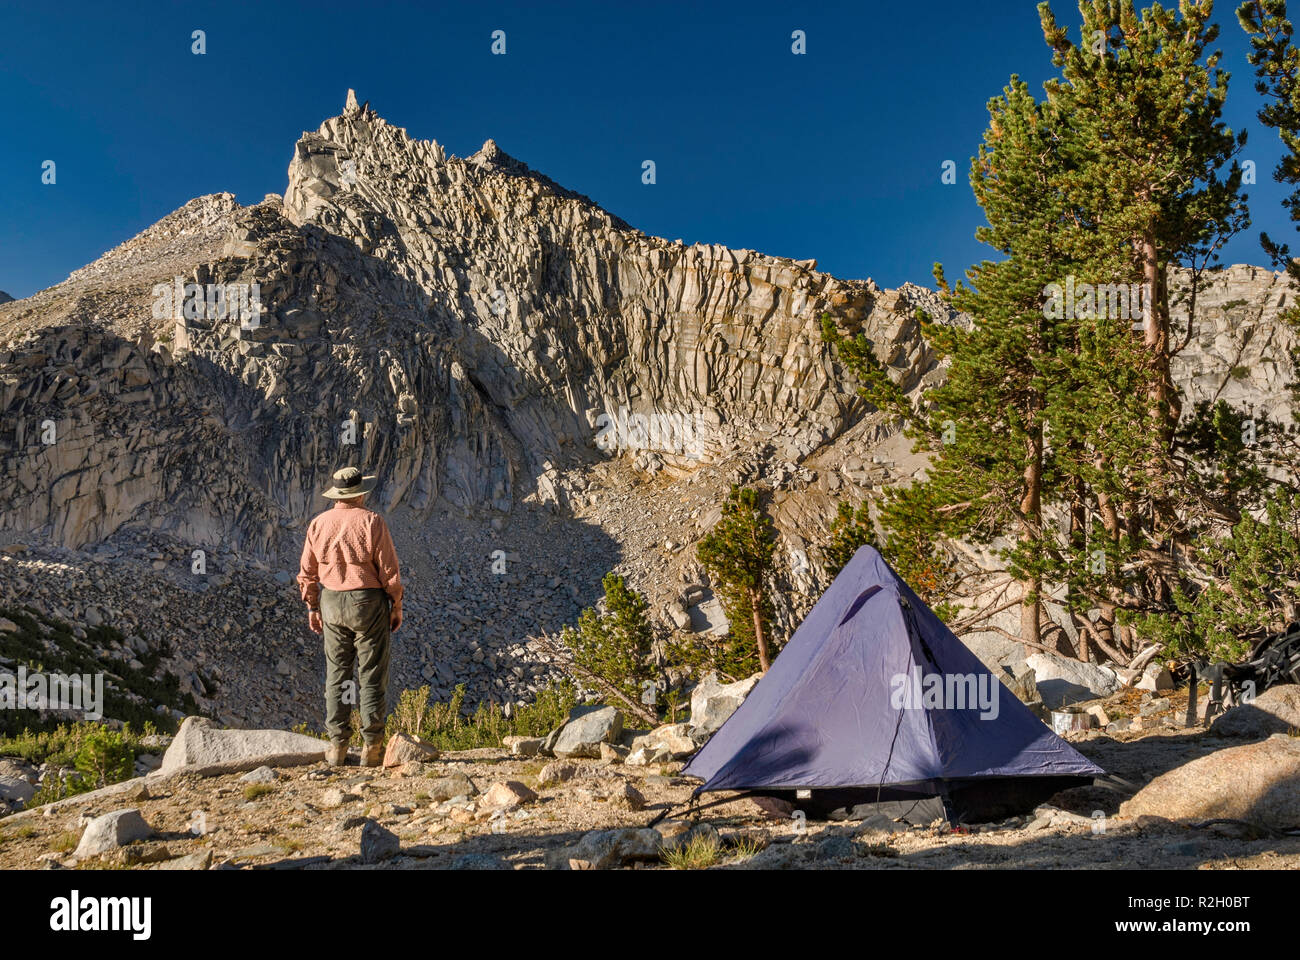 Namenlose Pyramide vom Campingplatz über riesige Schlagloch See in der Nähe der Kearsarge Pass gesehen, der östlichen Sierra Nevada, John Muir Wilderness, Kalifornien, USA Stockfoto